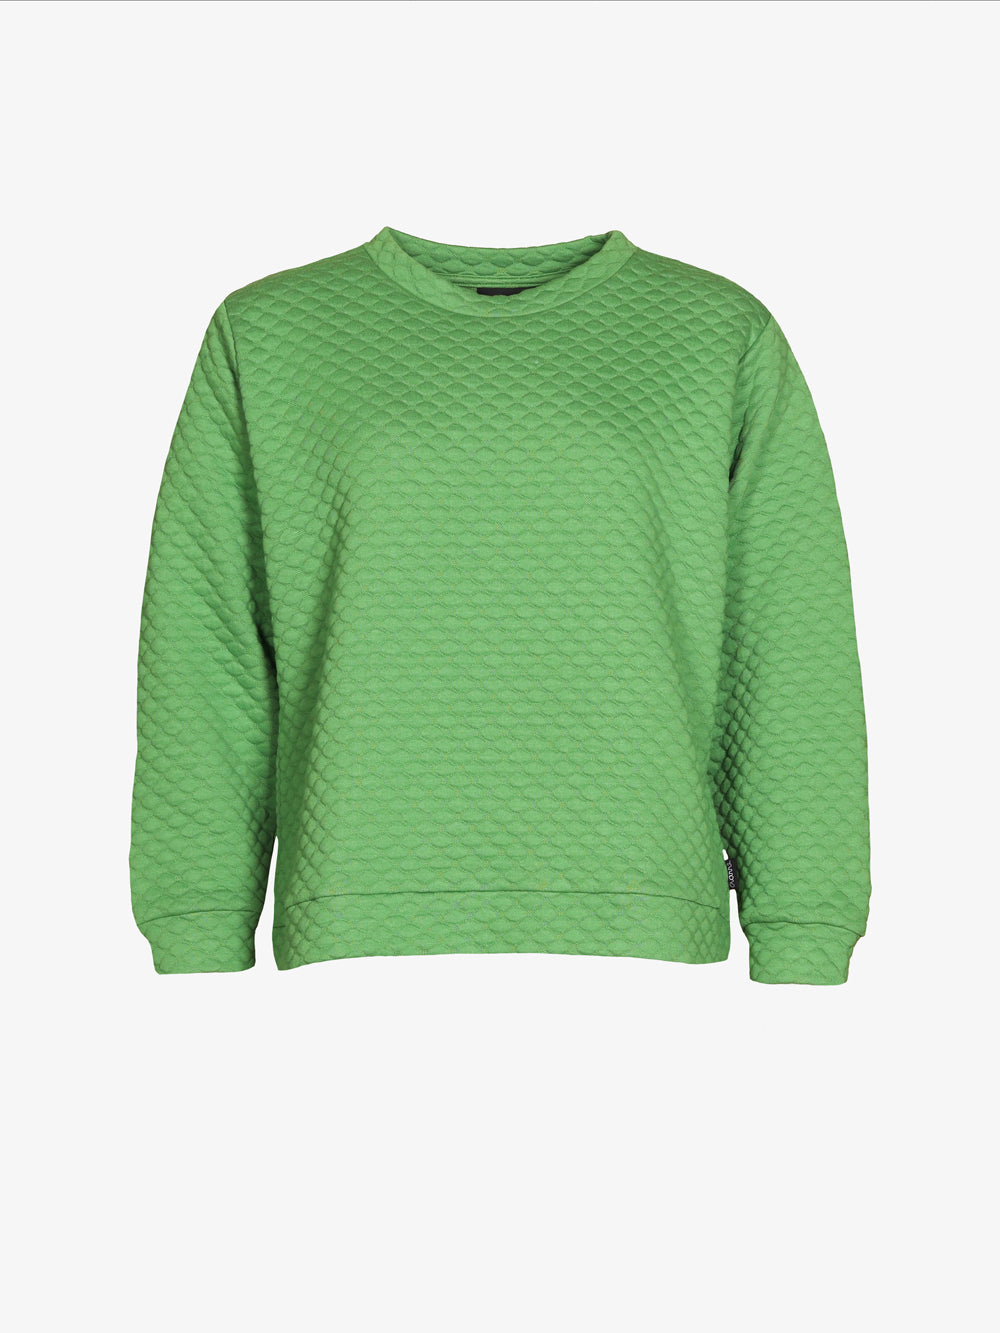 Bubble Sweater, Bright Green